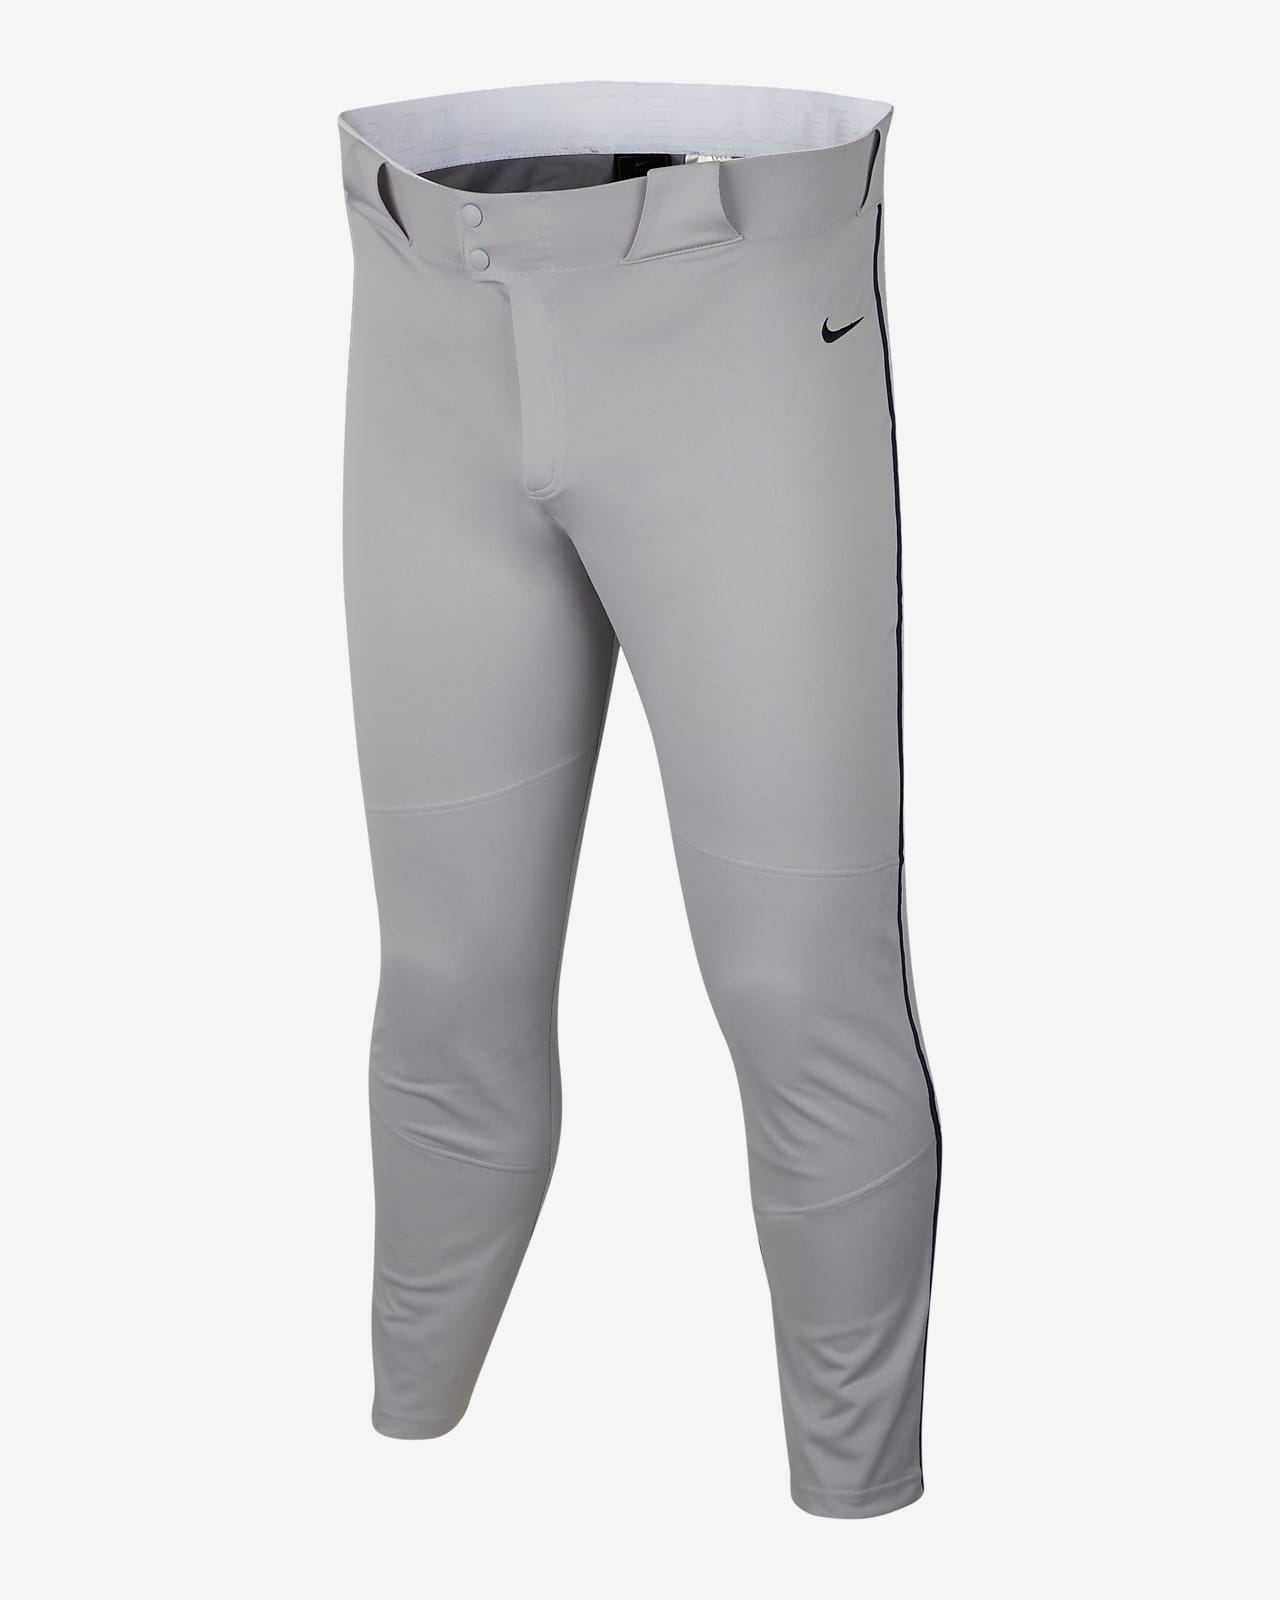 Nike Vapor Select Men's Baseball Pants